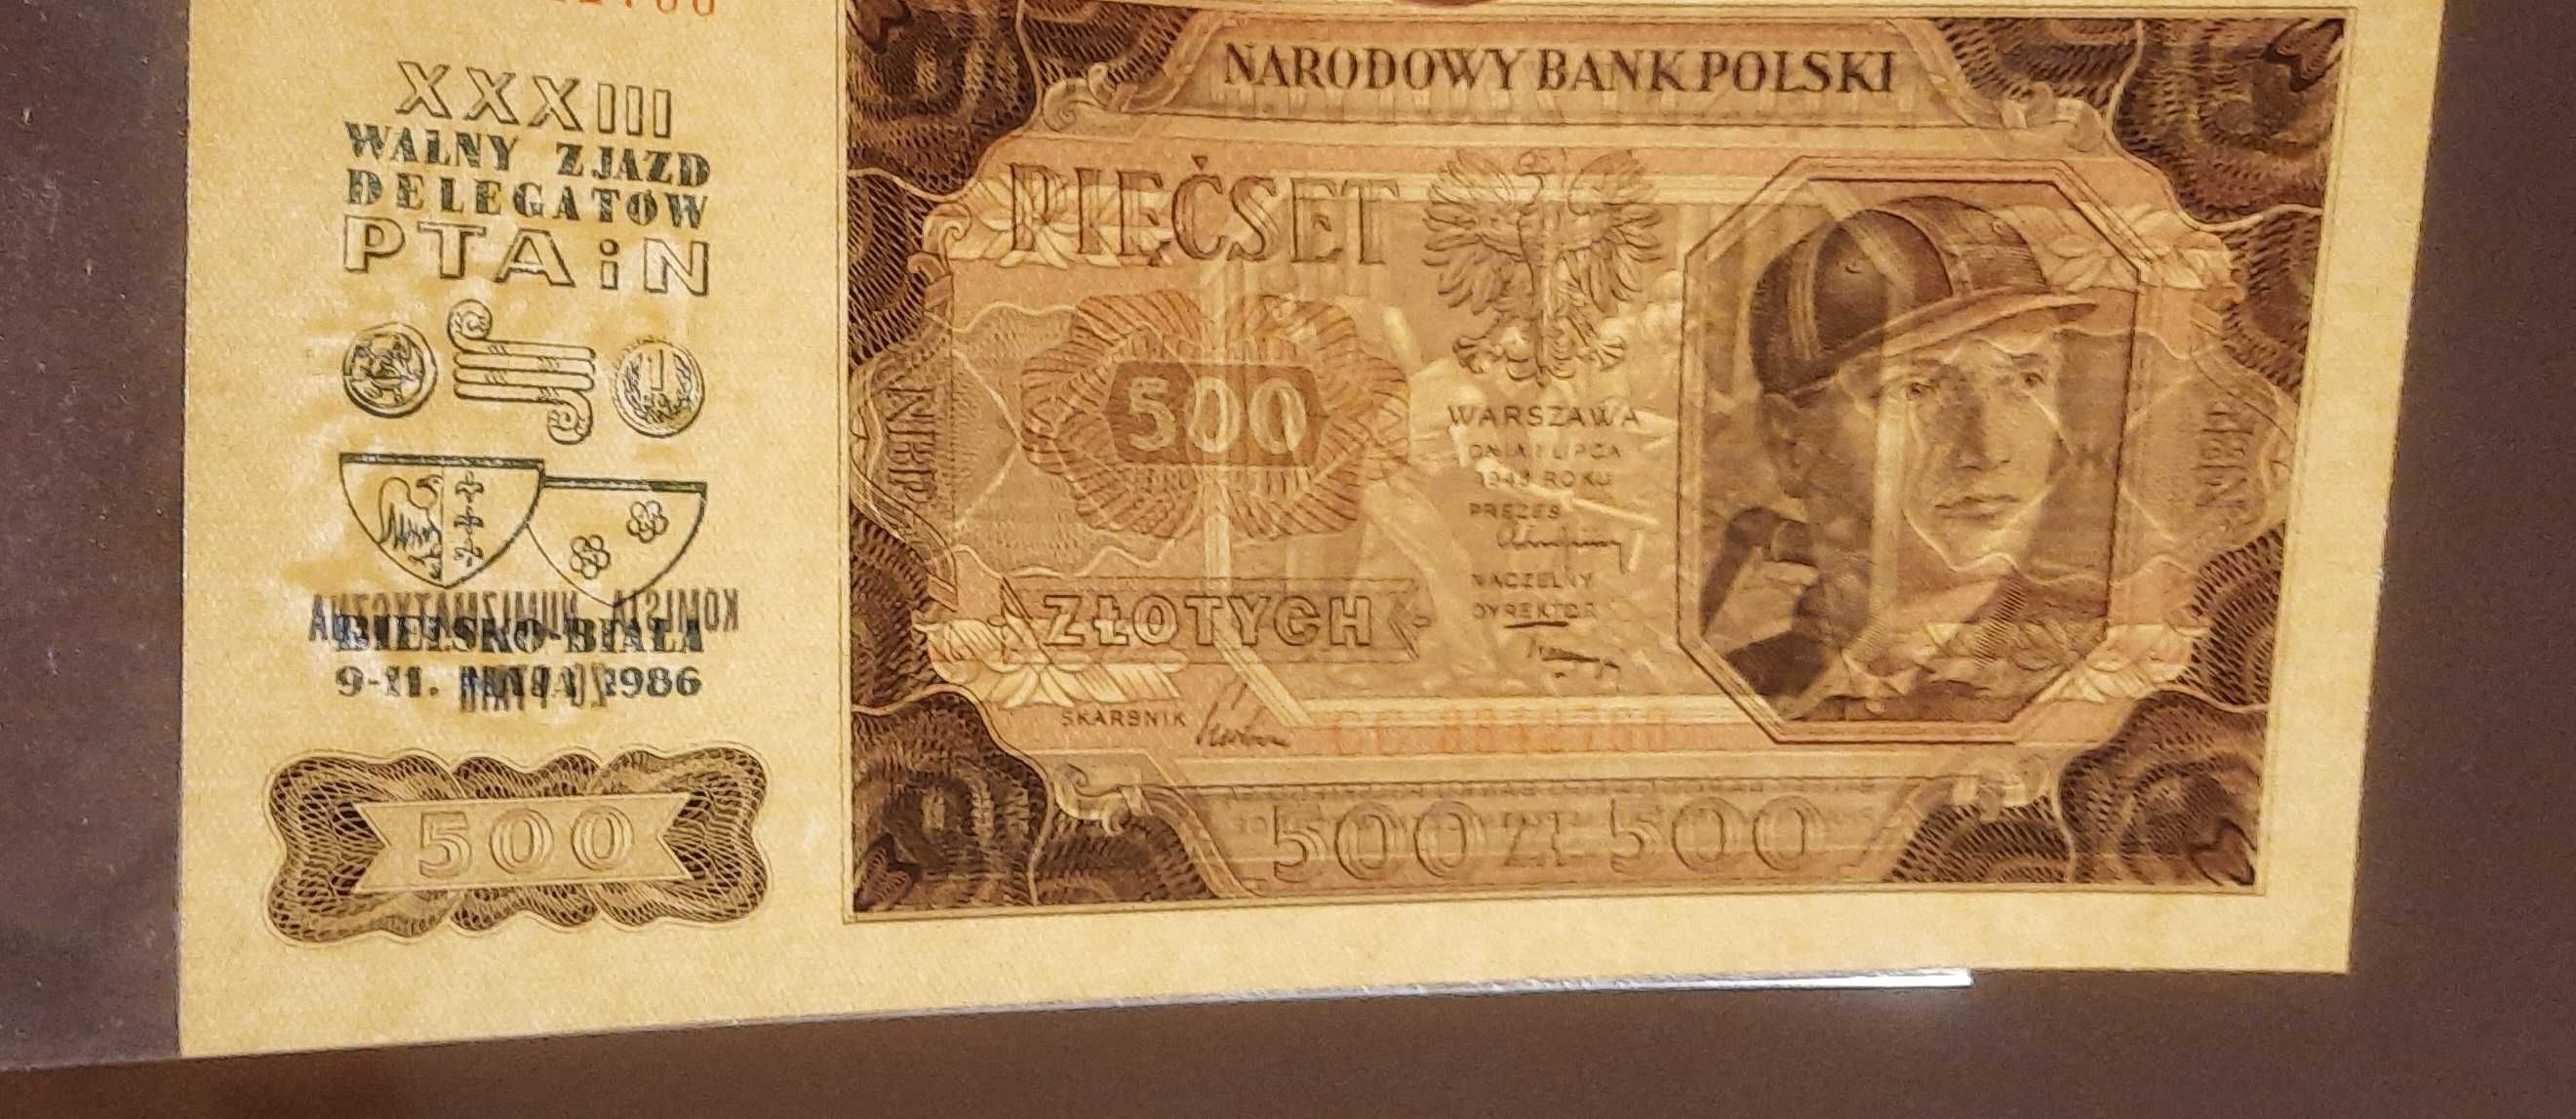 Banknot 500 zł 1948 r seria CC 884... UNC- z nadrukiem